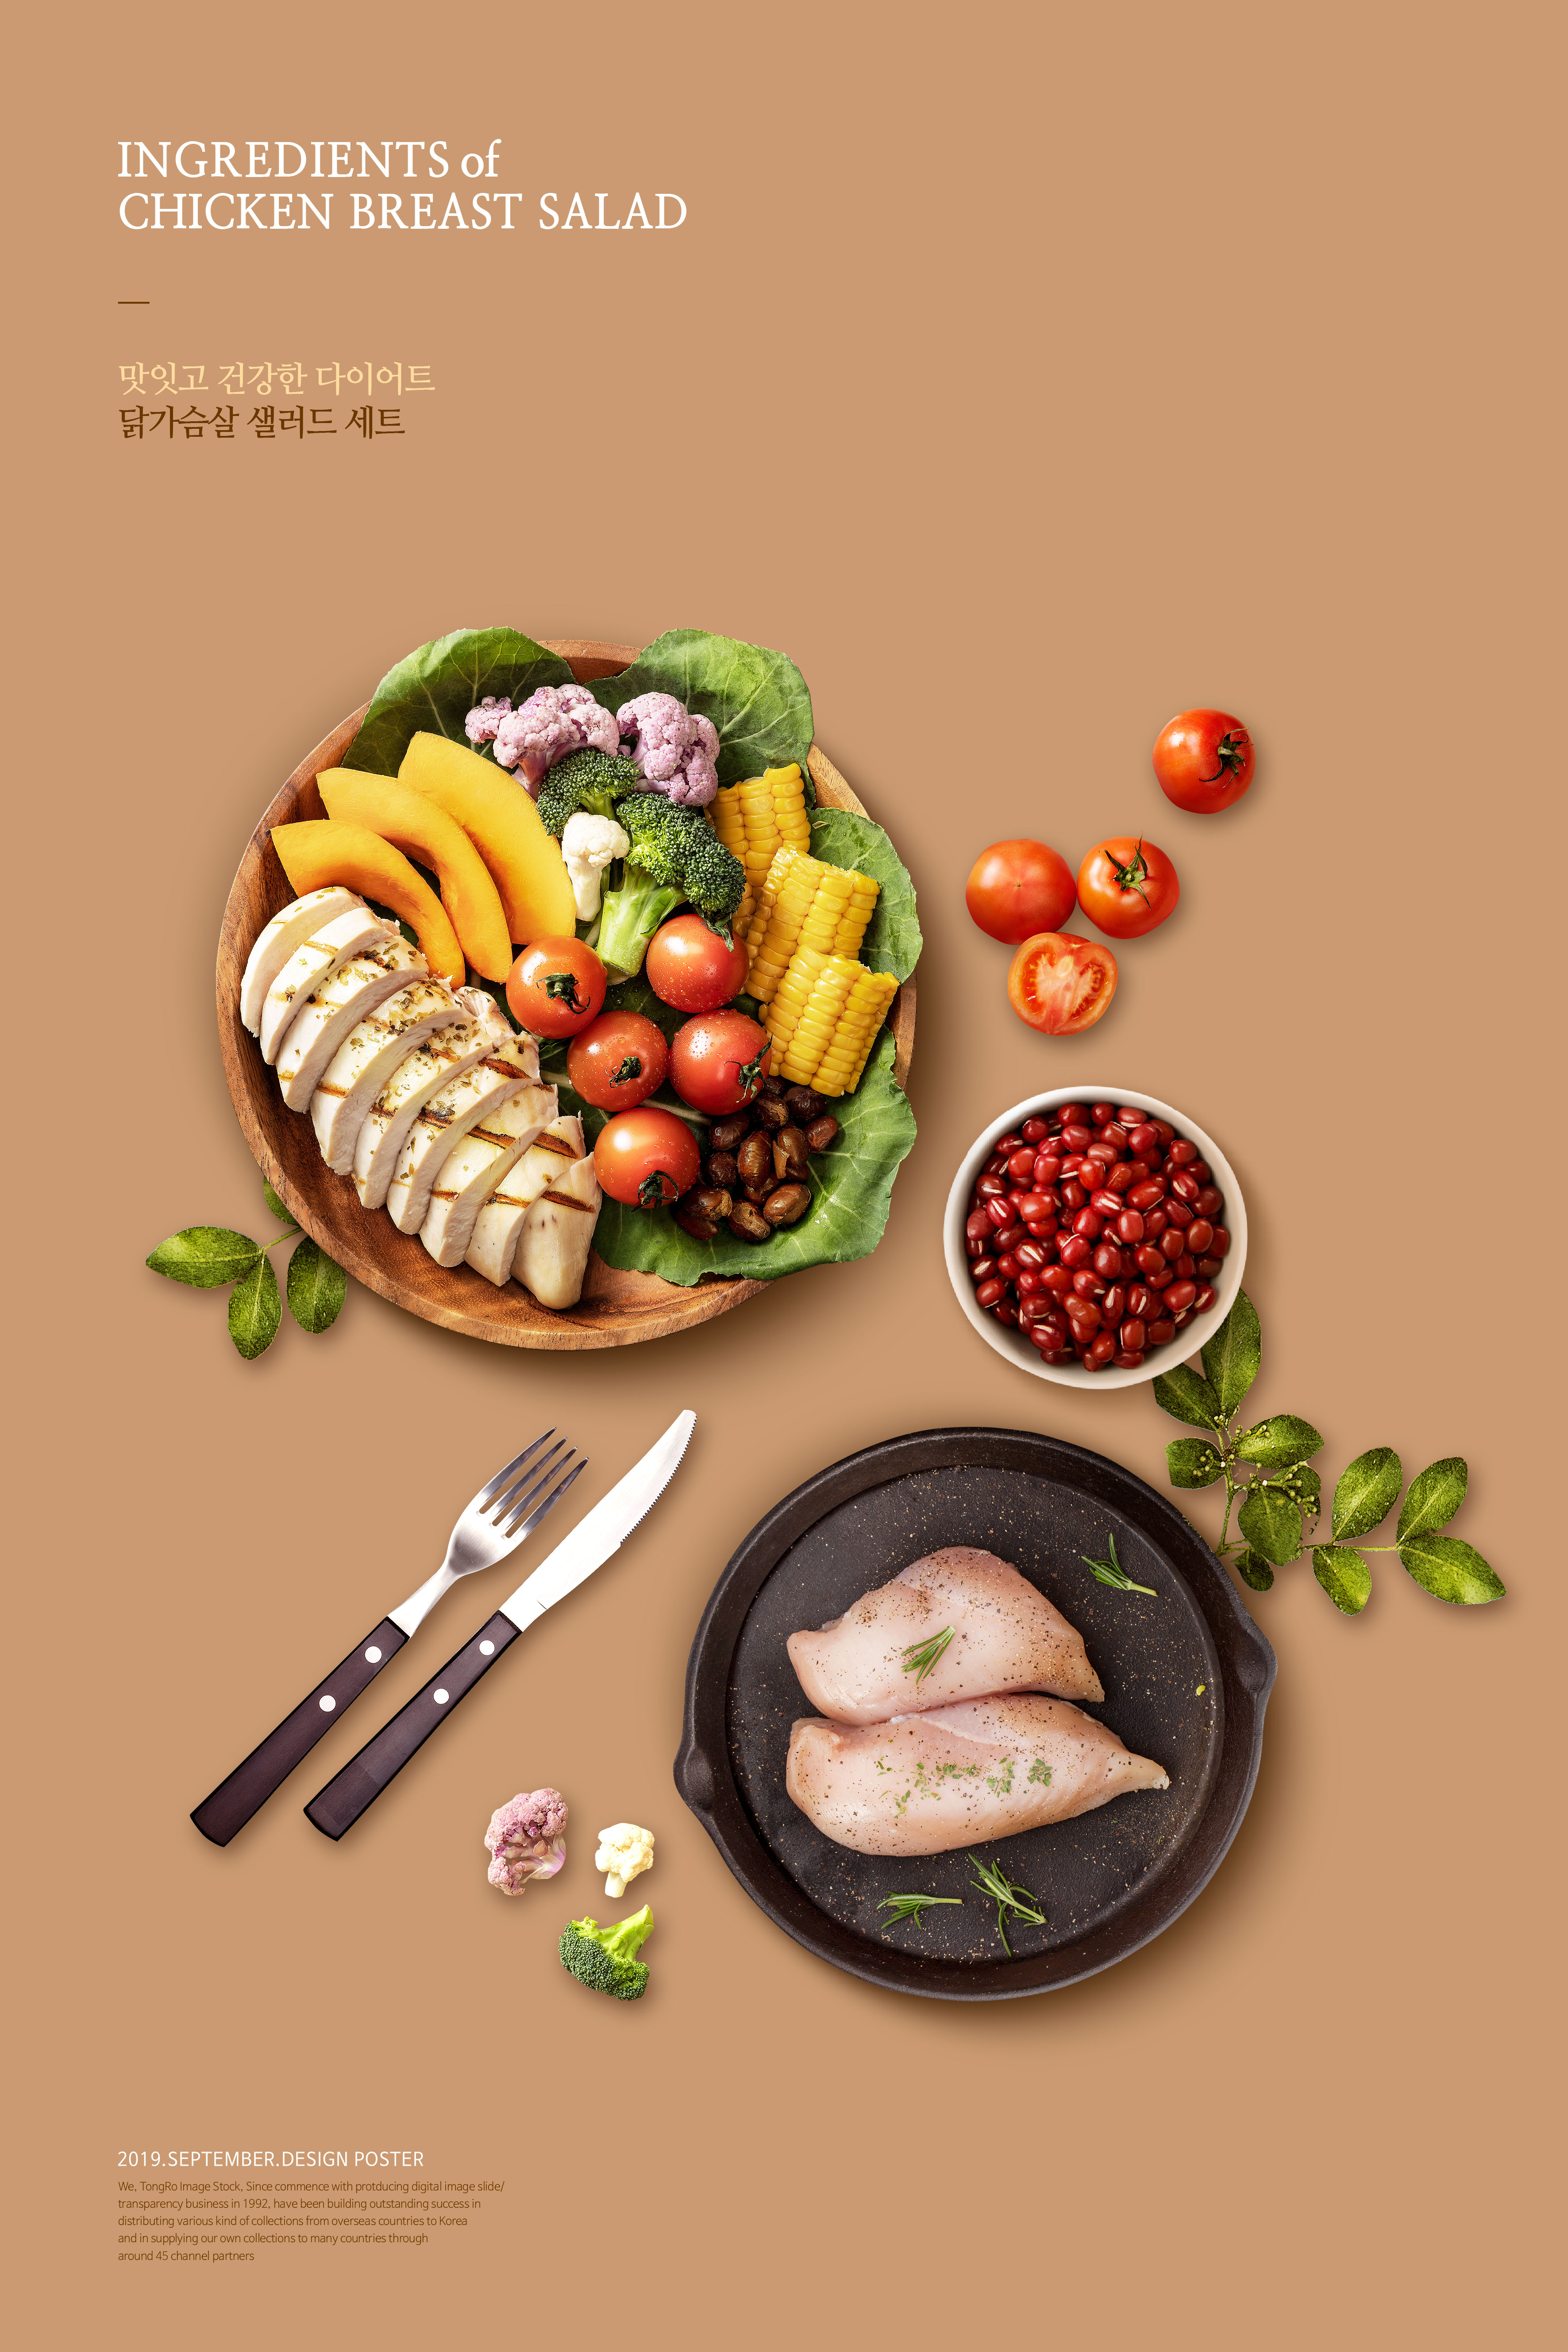 鸡胸肉排&蔬果沙拉套餐广告宣传海报模板插图